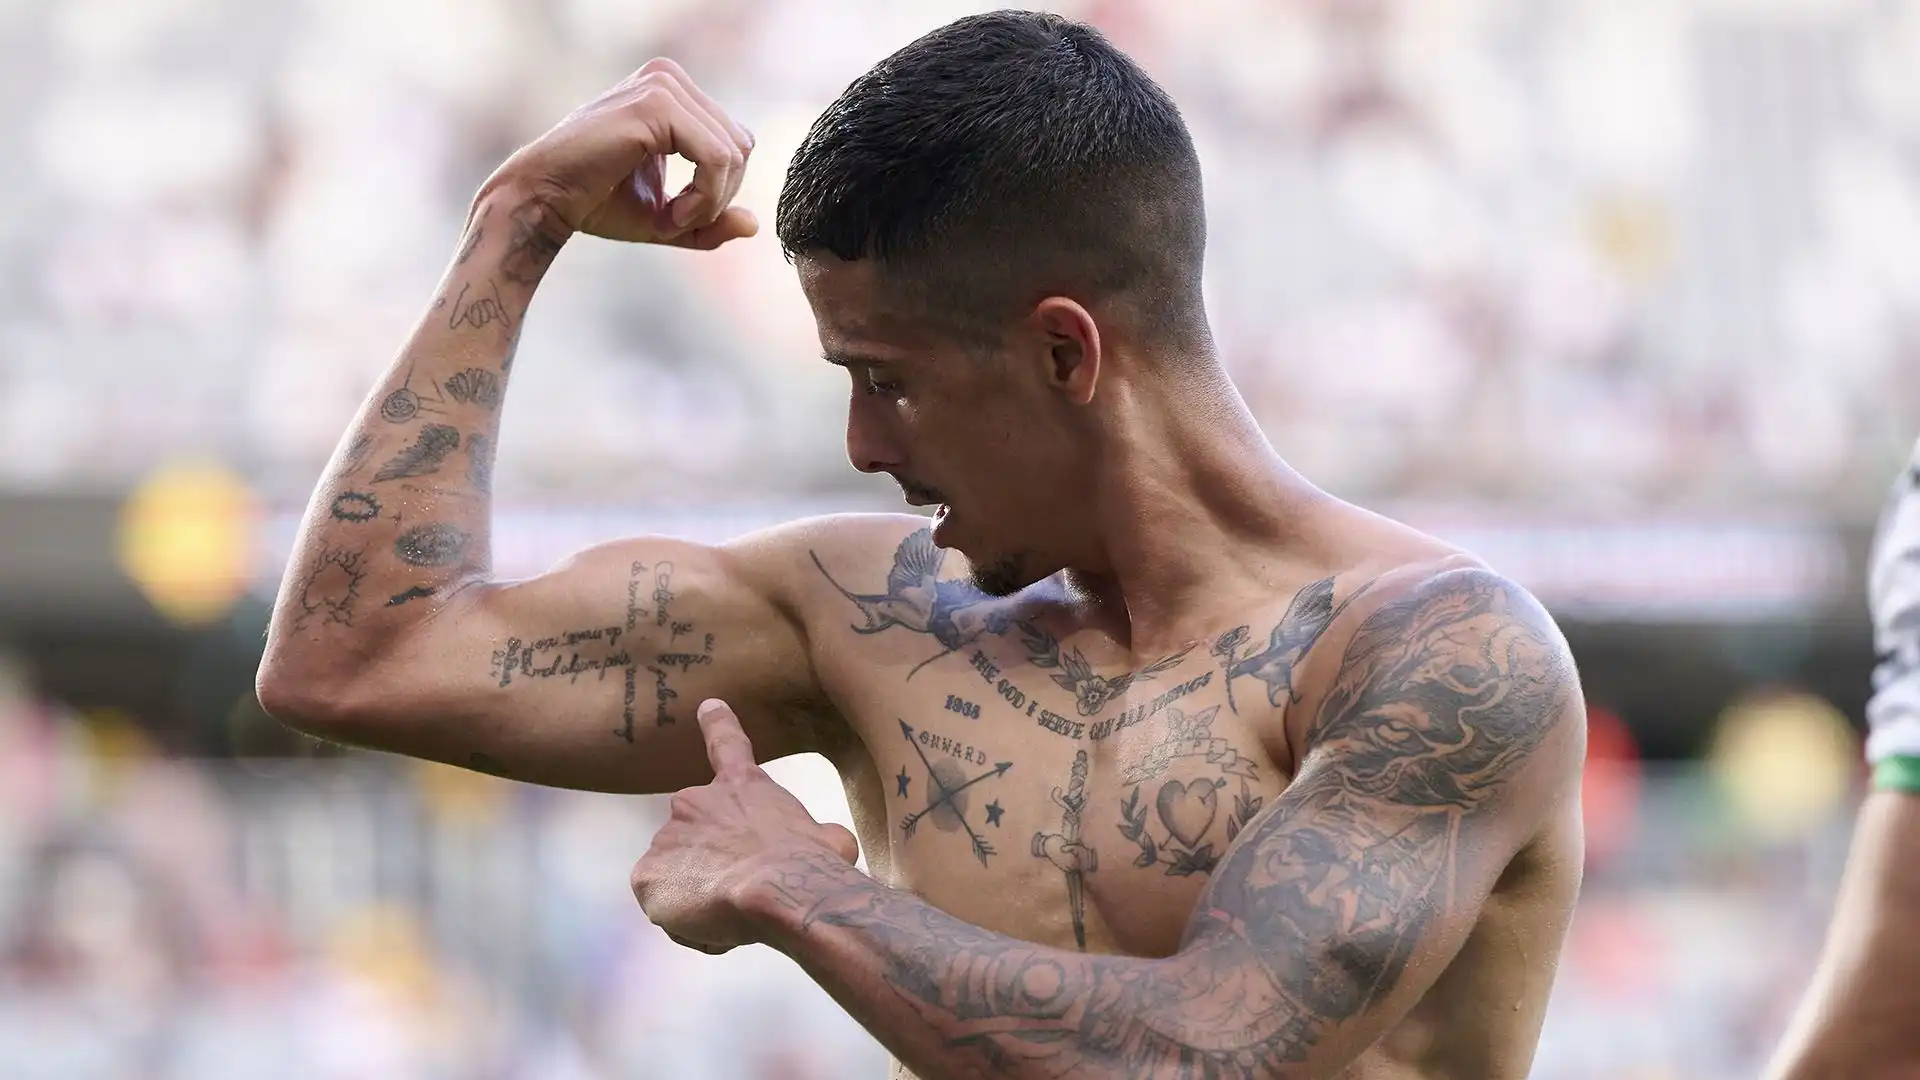 Elaborato e particolare il tatuaggio che Penha ha sulle braccia e sul torace: dopo il gol ha indicato la croce scritta con i nomi dei suoi parenti